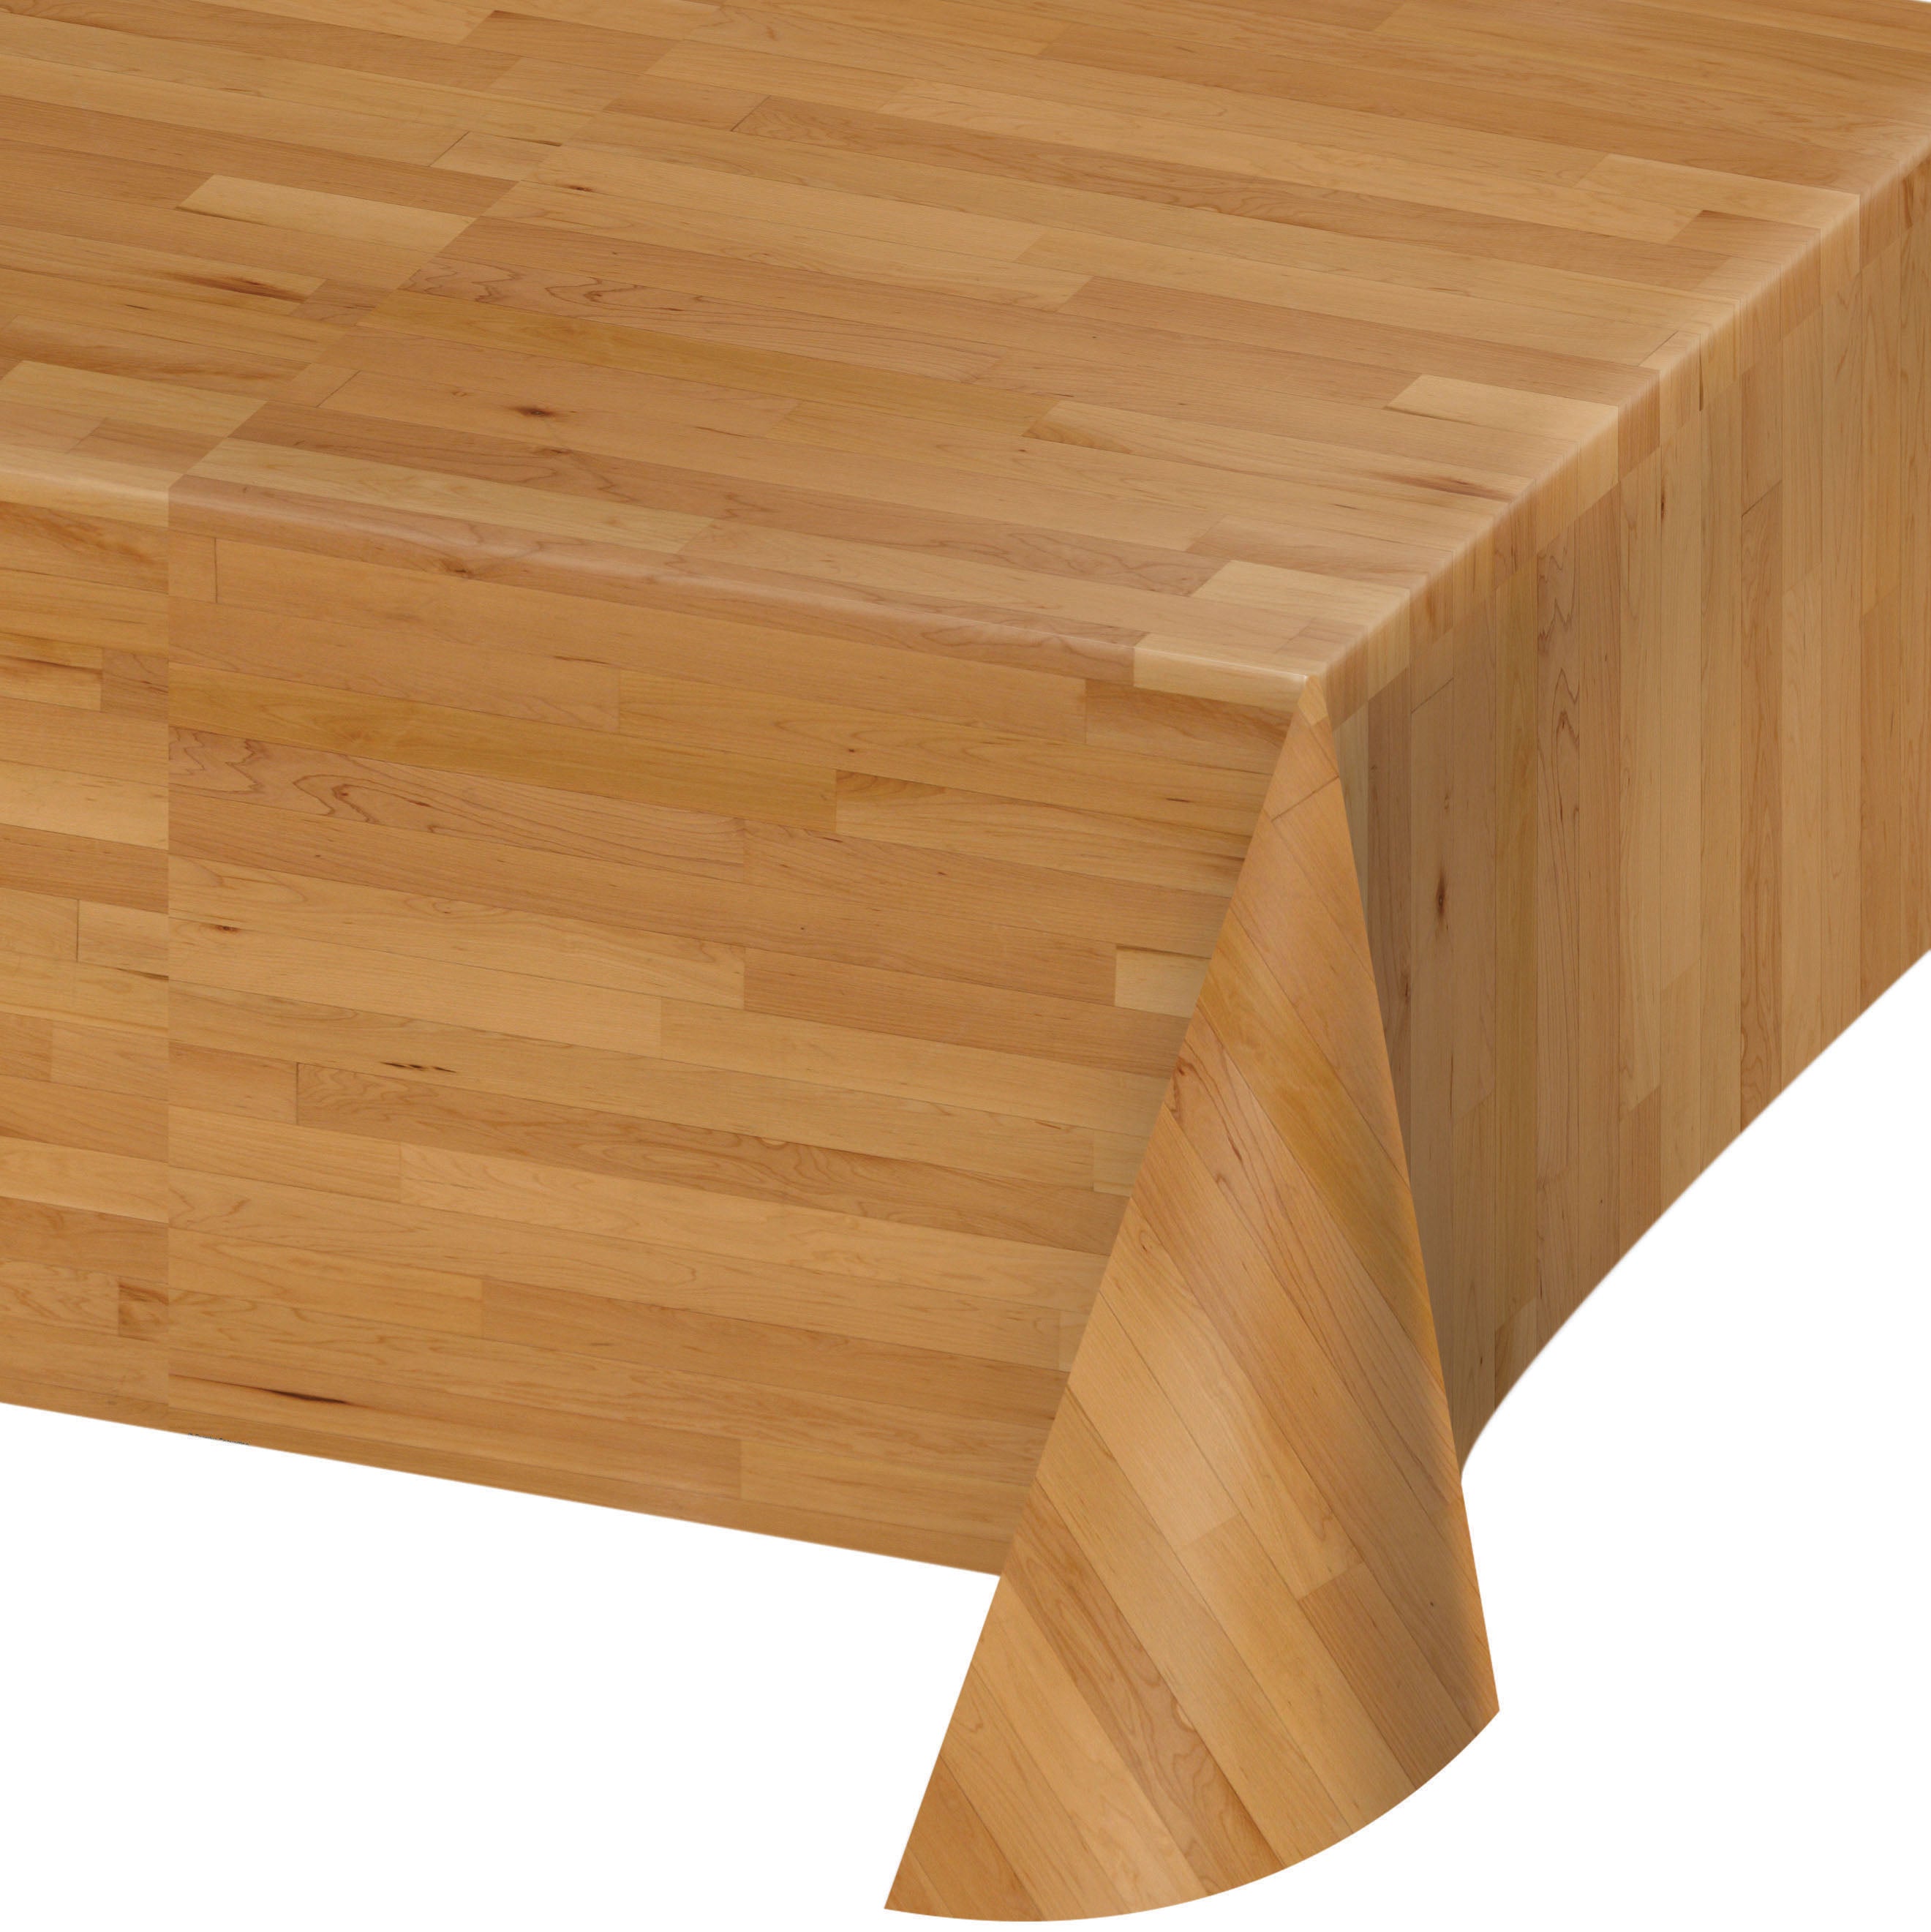 მაგიდის გადასაფარებელი wood floor 137სმX259სმ